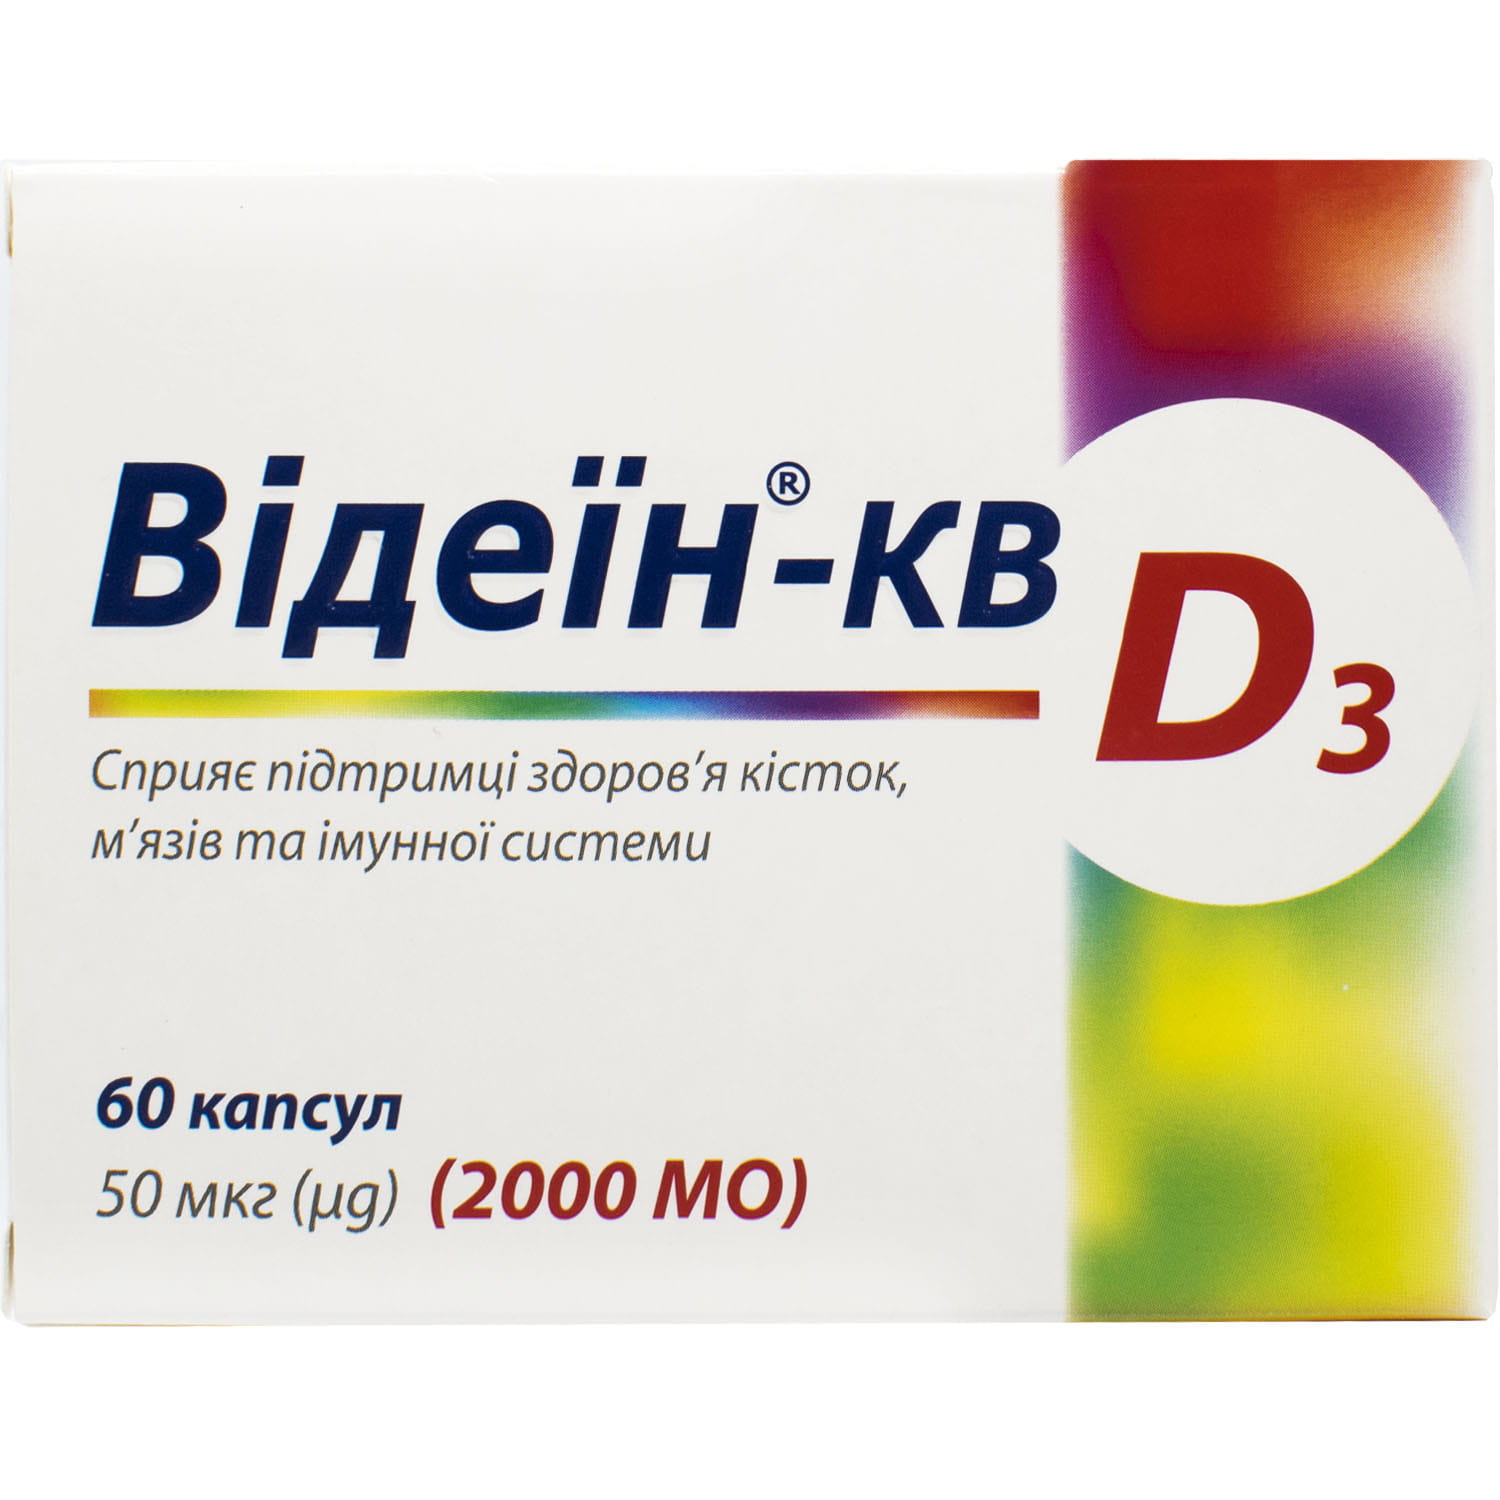 Відеїн-КВ вітамін Д3 2000 МО капсули для підтримки здоров'я кісток, м .